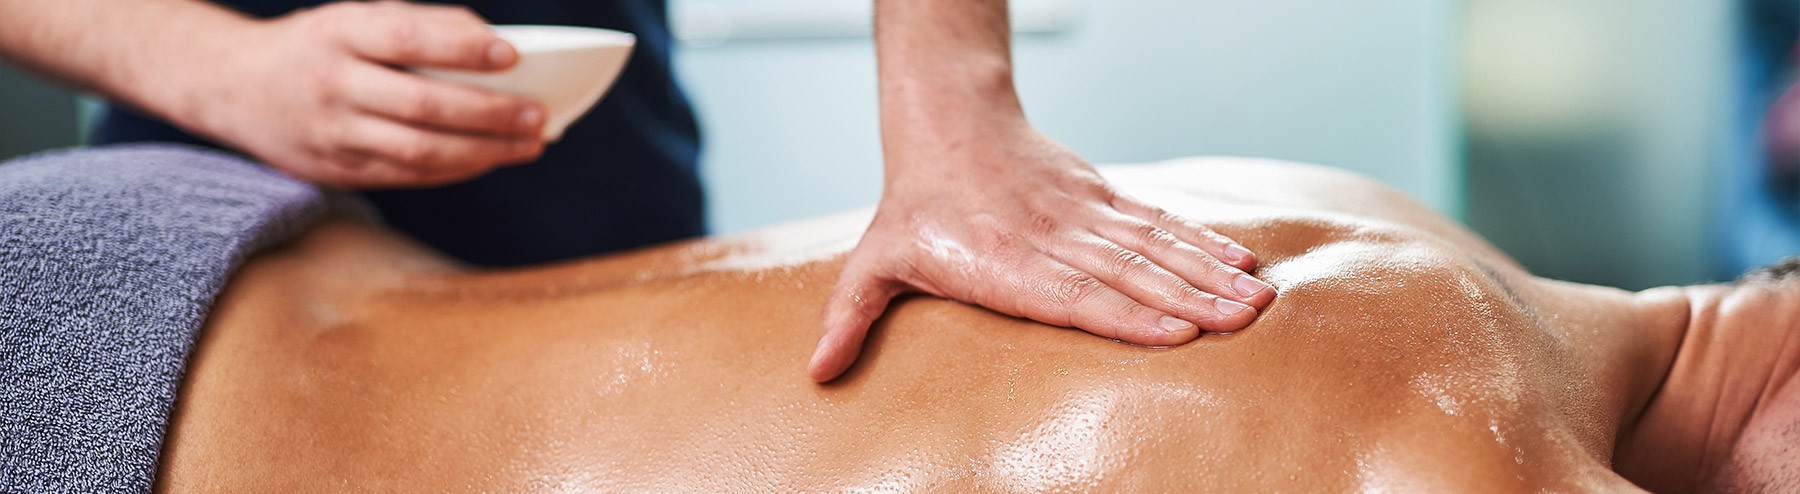 Huile de massage Musculaire - Gaulthérie & Menthe poivrée -  Levteria-cosmetiques